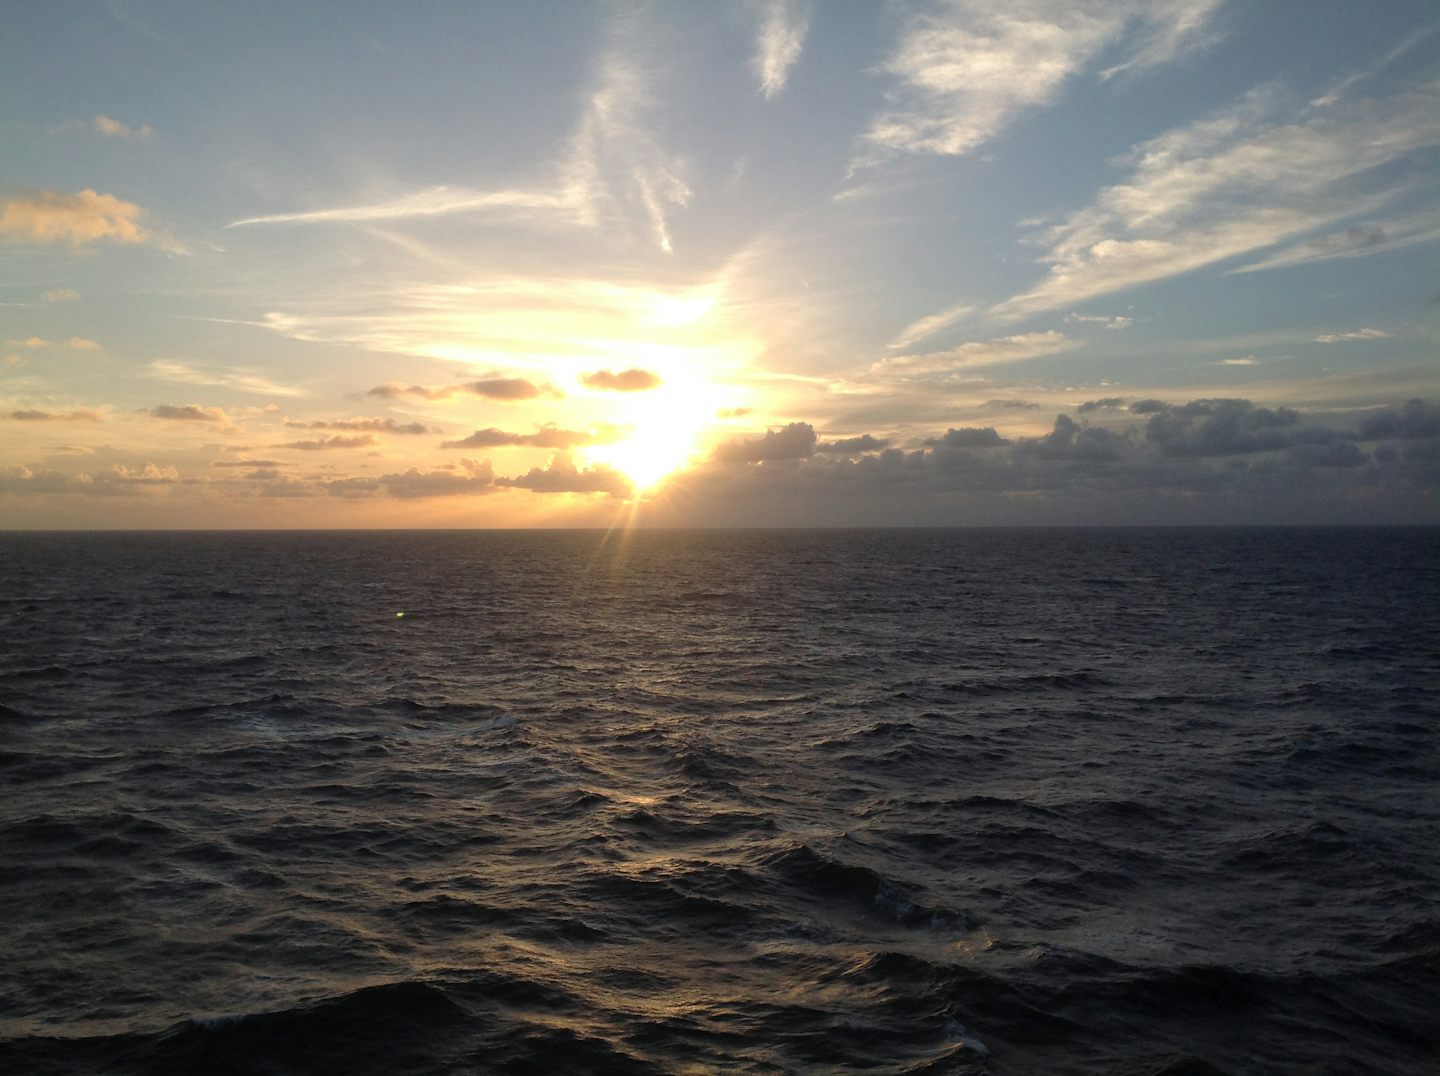 Beautiful sunset on the open sea